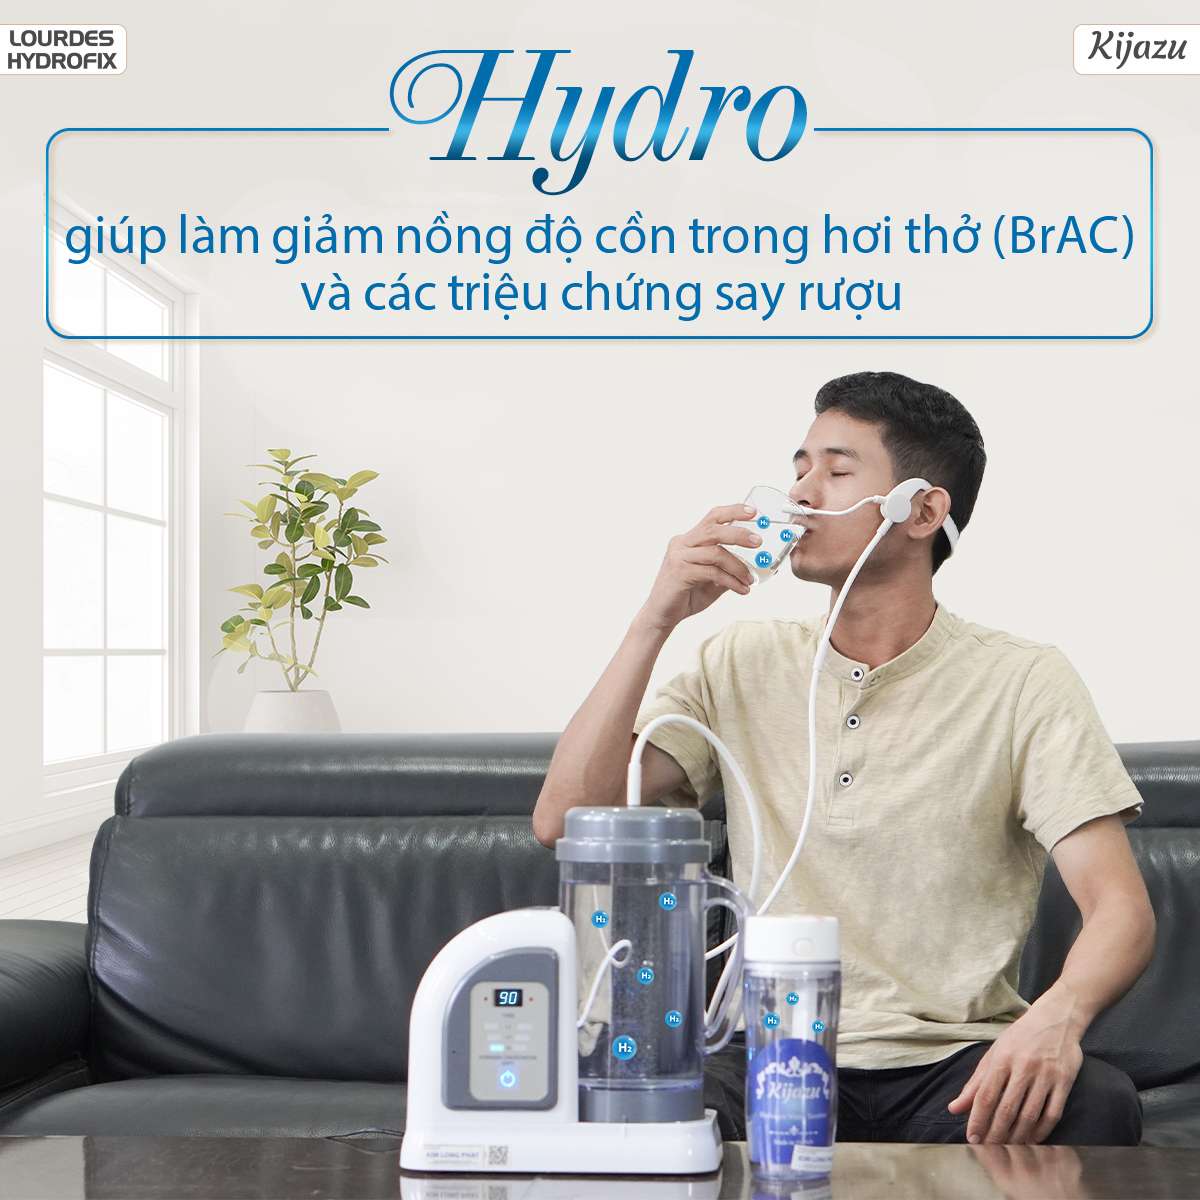 Hydro được nghiên cứu là có công dụng giúp làm giảm nồng độ cồn trong hơi thở (BrAC) và các triệu chứng nôn nao hiệu quả